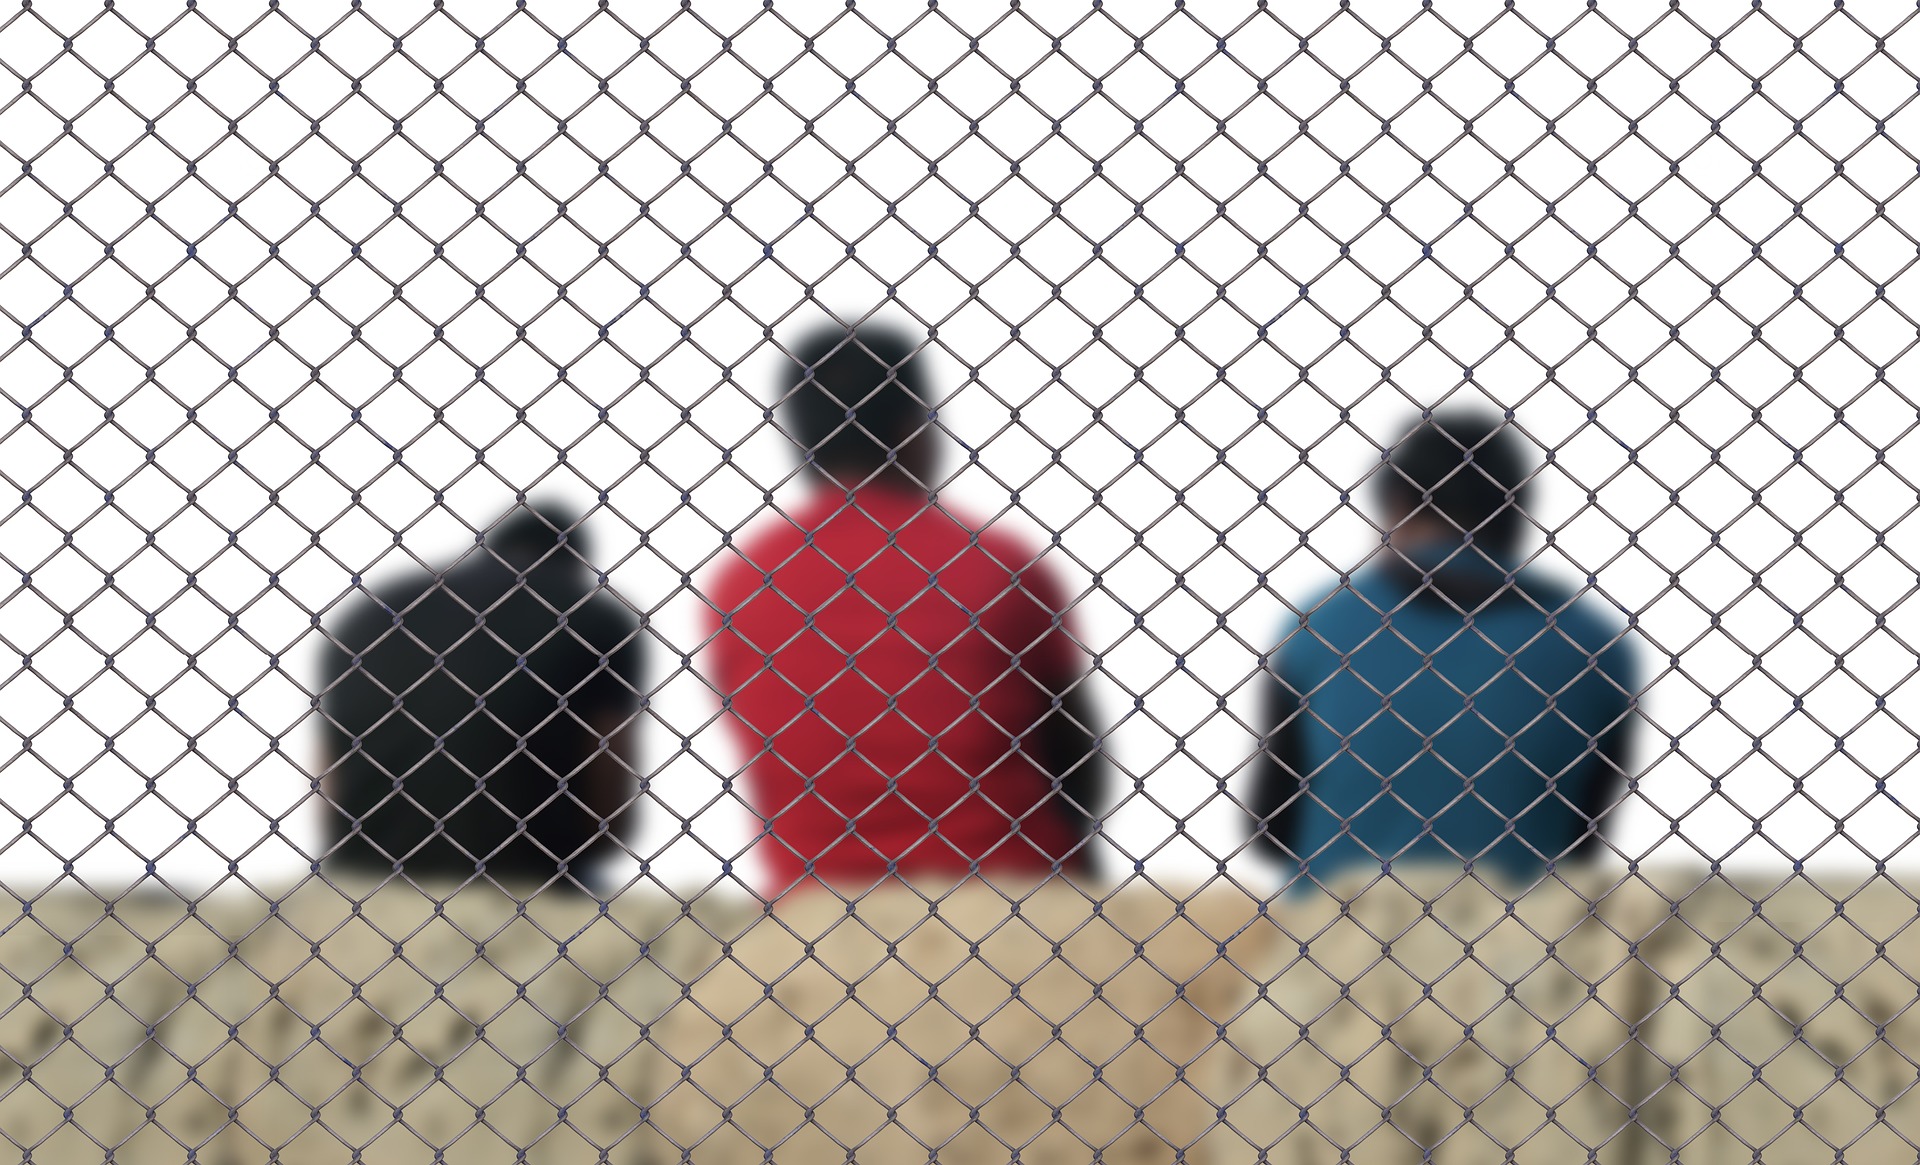 Im Vordergrund ist eine graue Mauer. Über das gesamte Bild spannt sich ein Maschendrahtzaun. Mittig hiner der Mauer sind drei Männer mit Migrationshintergrund in der Rücken-Ansicht im Bild. Sie tragen eine schwarze, eine rote und eine blaue Jacke. Alle drei sind dunkelhaarig.